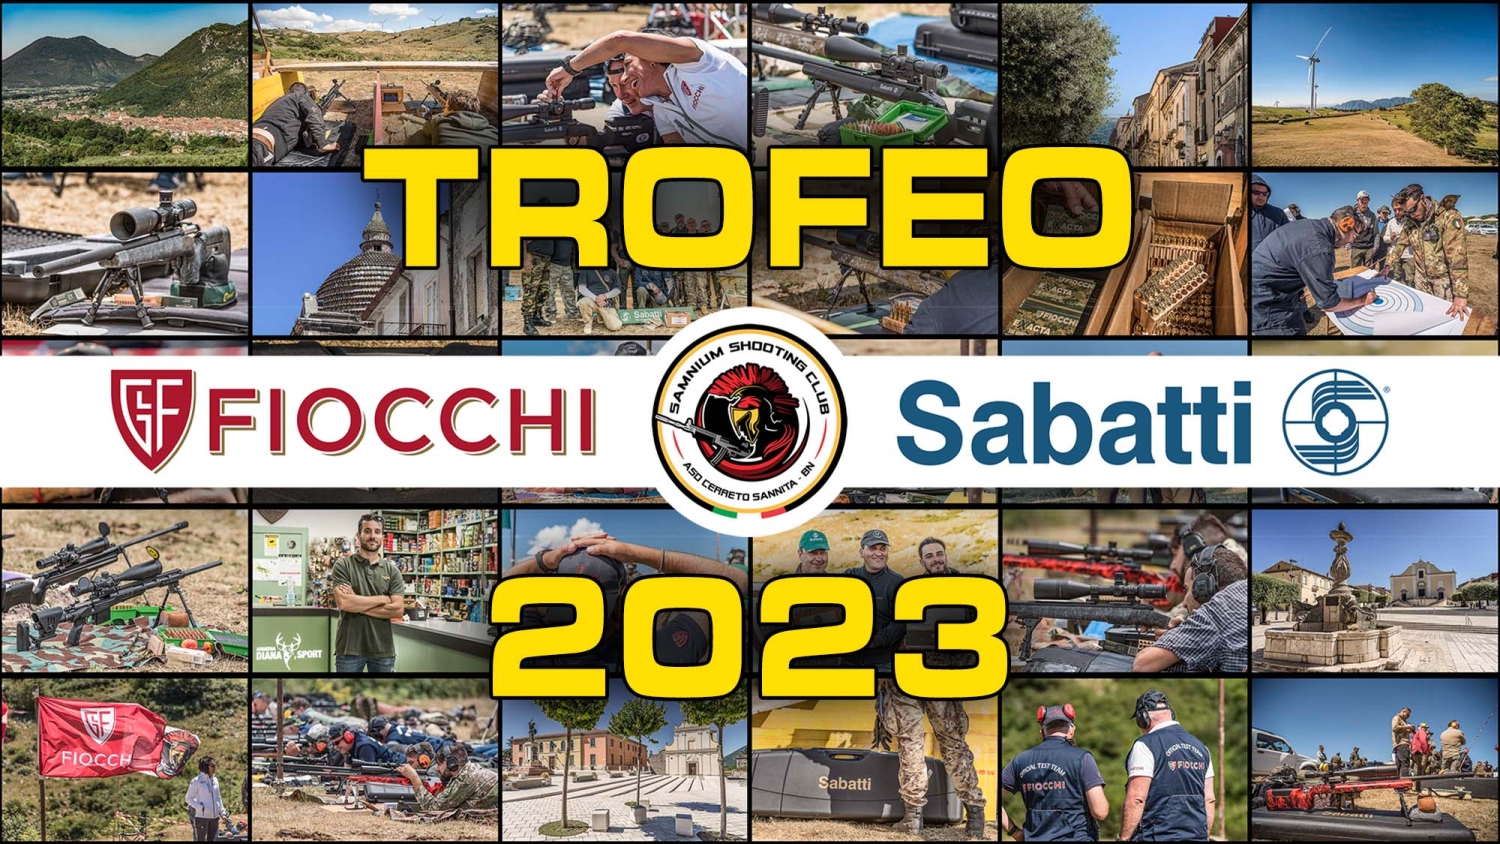 Trofeo Fiocchi-Sabatti 2023